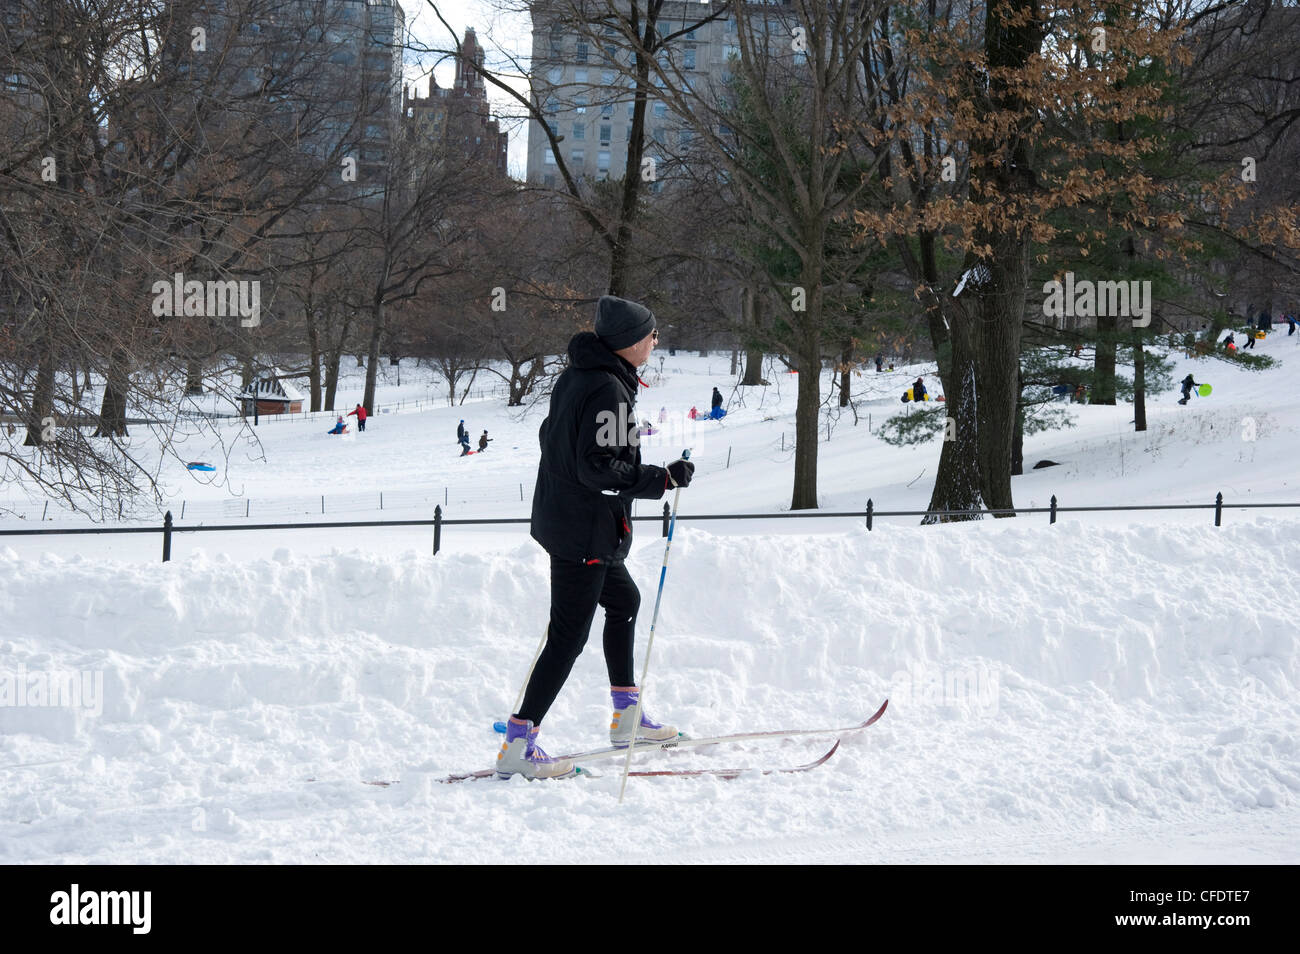 Un homme à skis de fond dans Central Park après un blizzard, New York, État de New York, États-Unis d'Amérique Banque D'Images